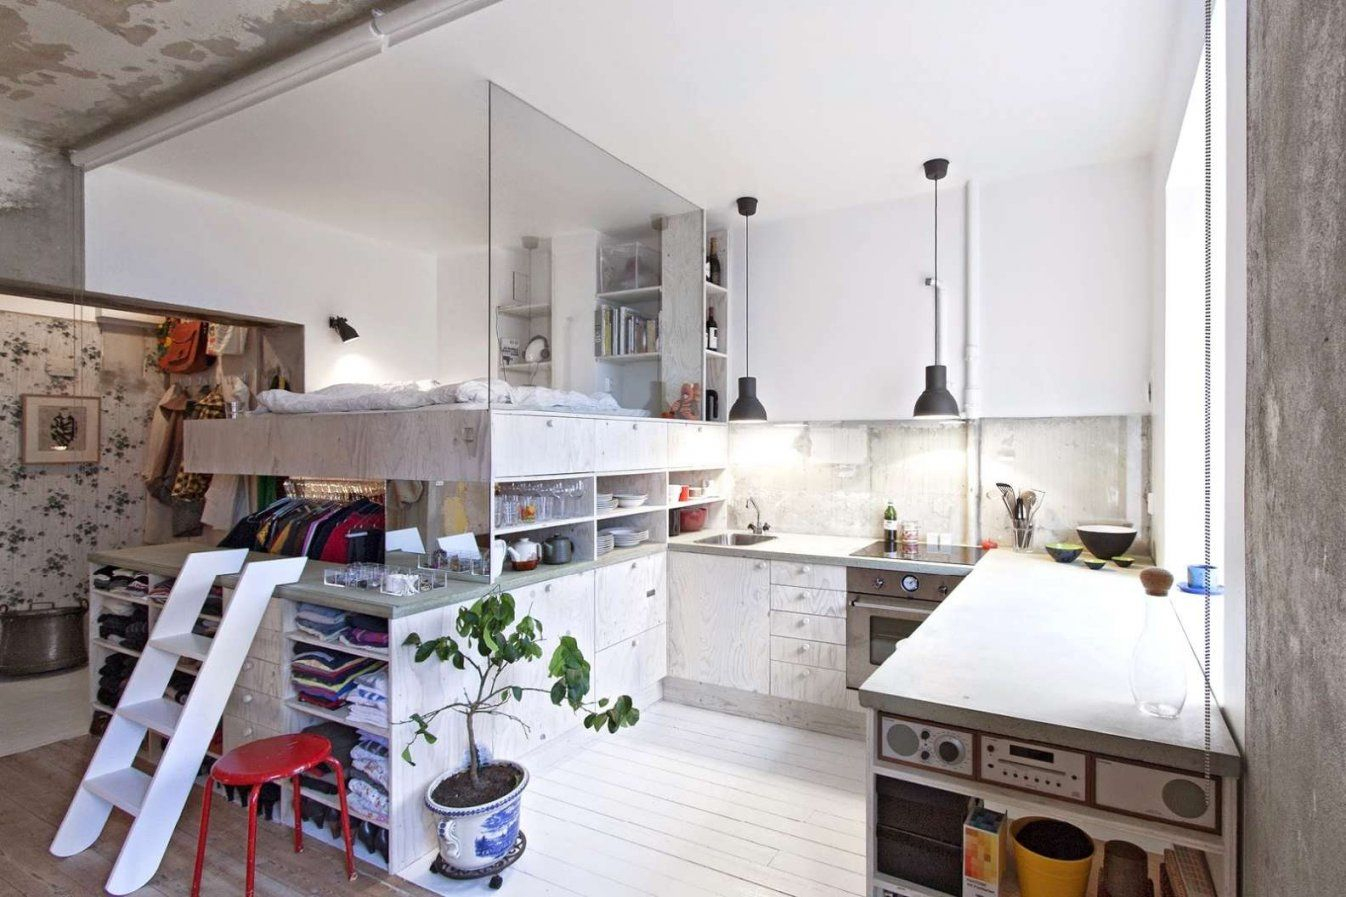 30 Qm Wohnung Einrichten  Haus Design Ideen für 1 Zimmer Wohnung Einrichten 30Qm